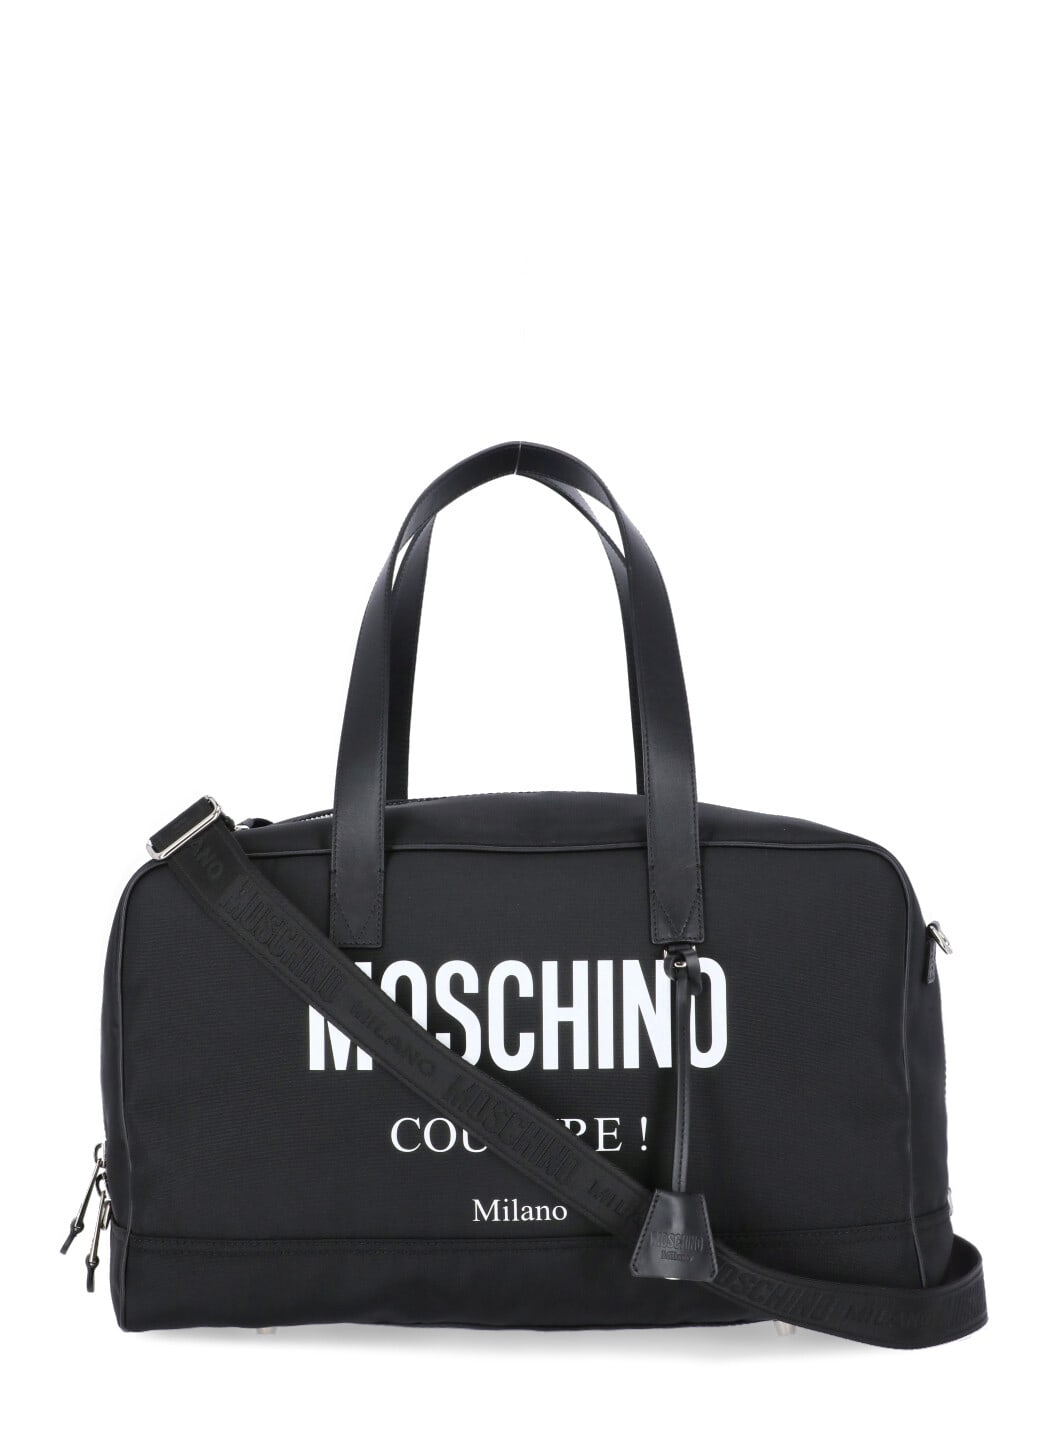 Moschino Logo Duffel Bag